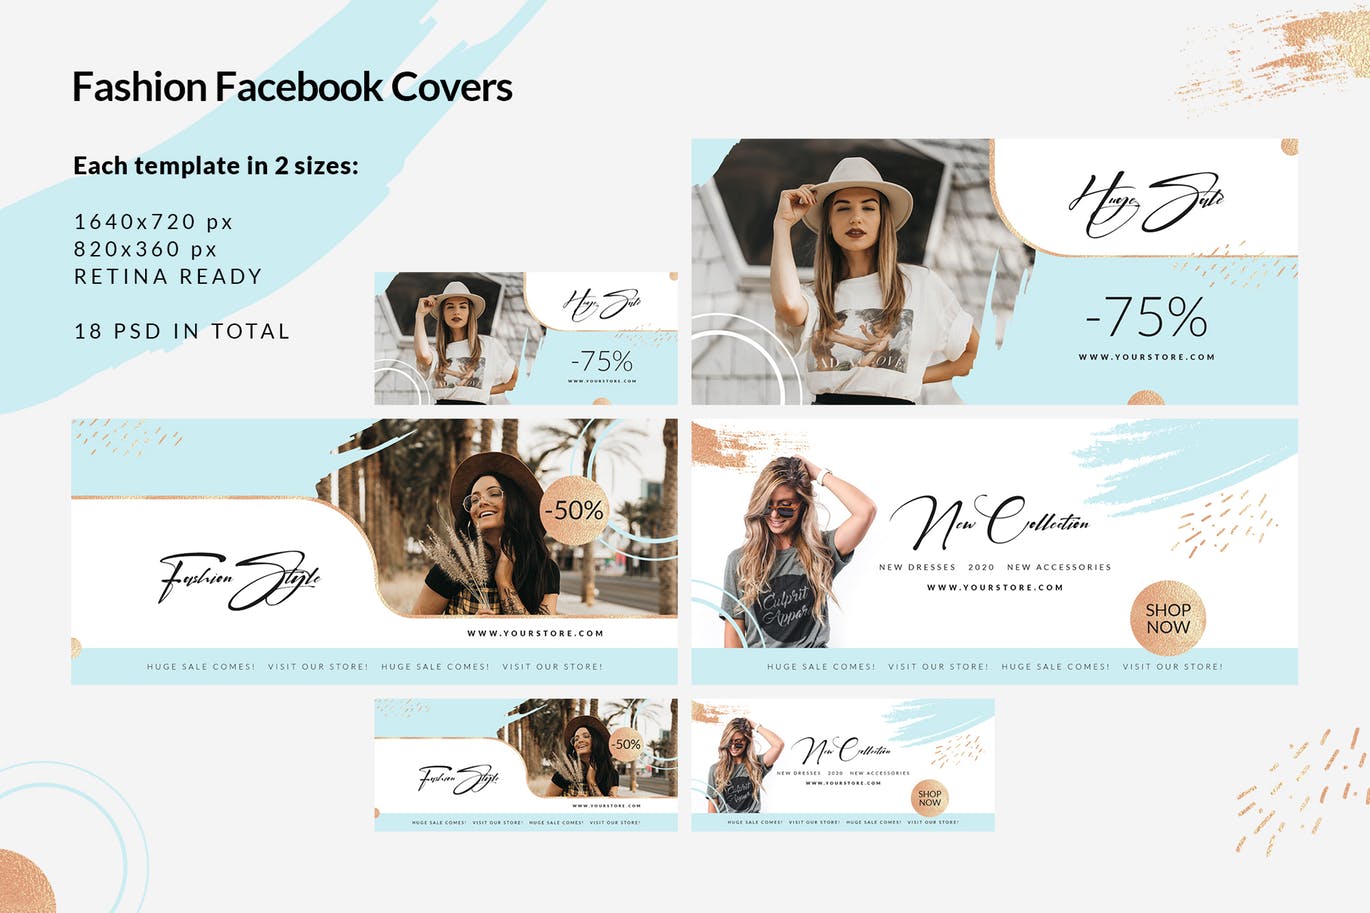 时尚品牌打折促销Facebook封面设计模板第一素材精选 Fashion Facebook Covers插图(1)